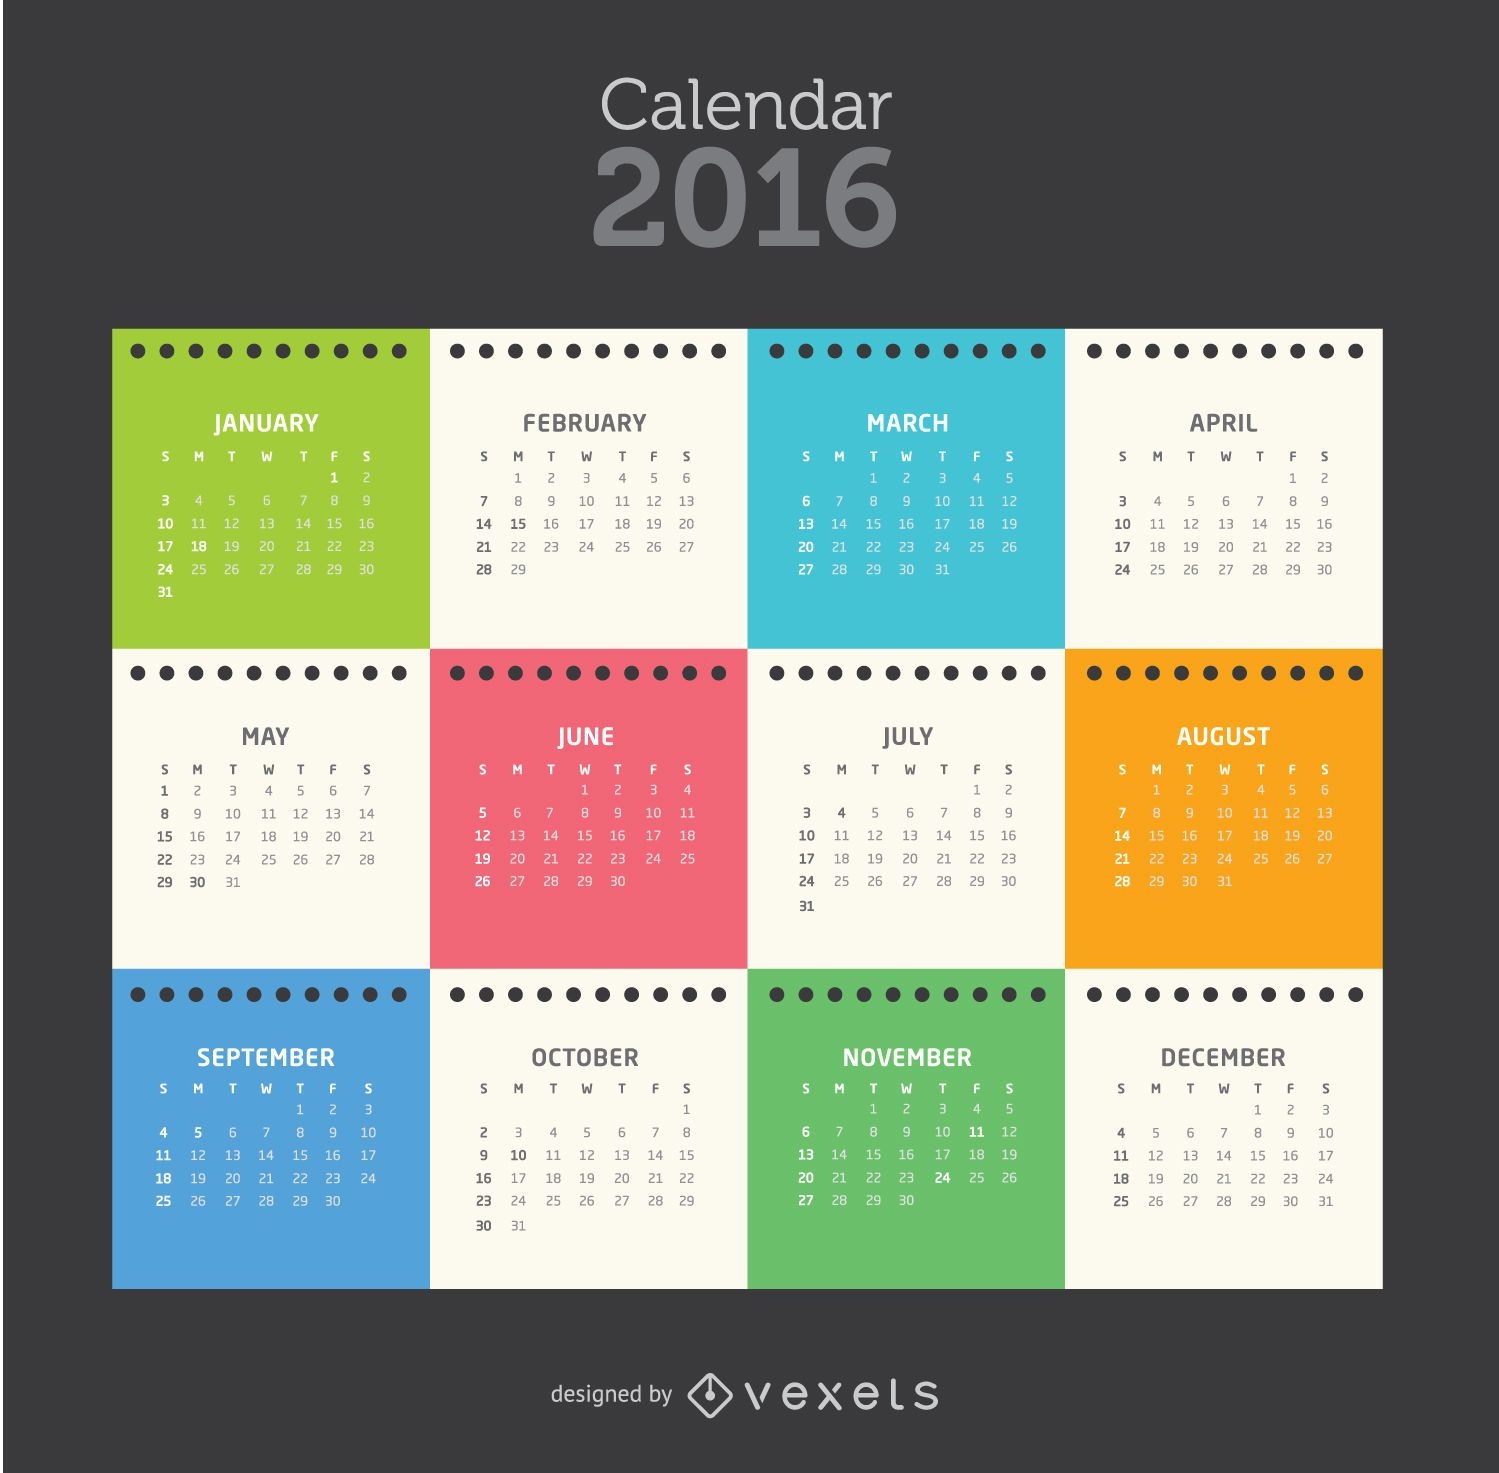 Calendario de hojas de bloc de notas 2016 colorido tempalte